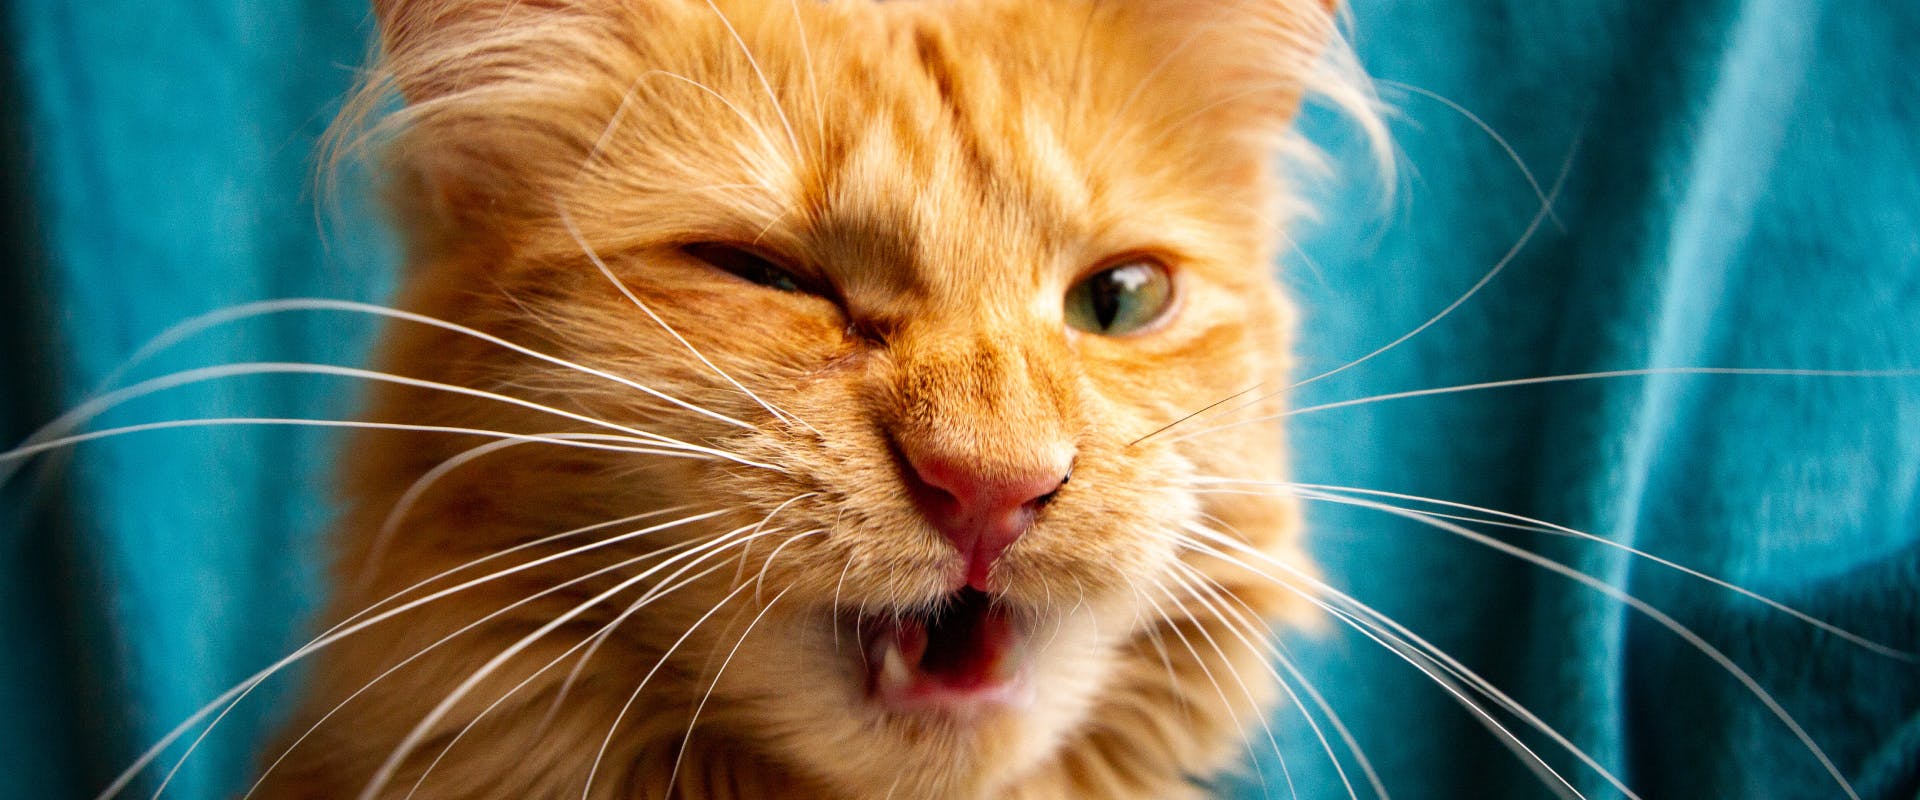 a long haired ginger cat feline sneezing